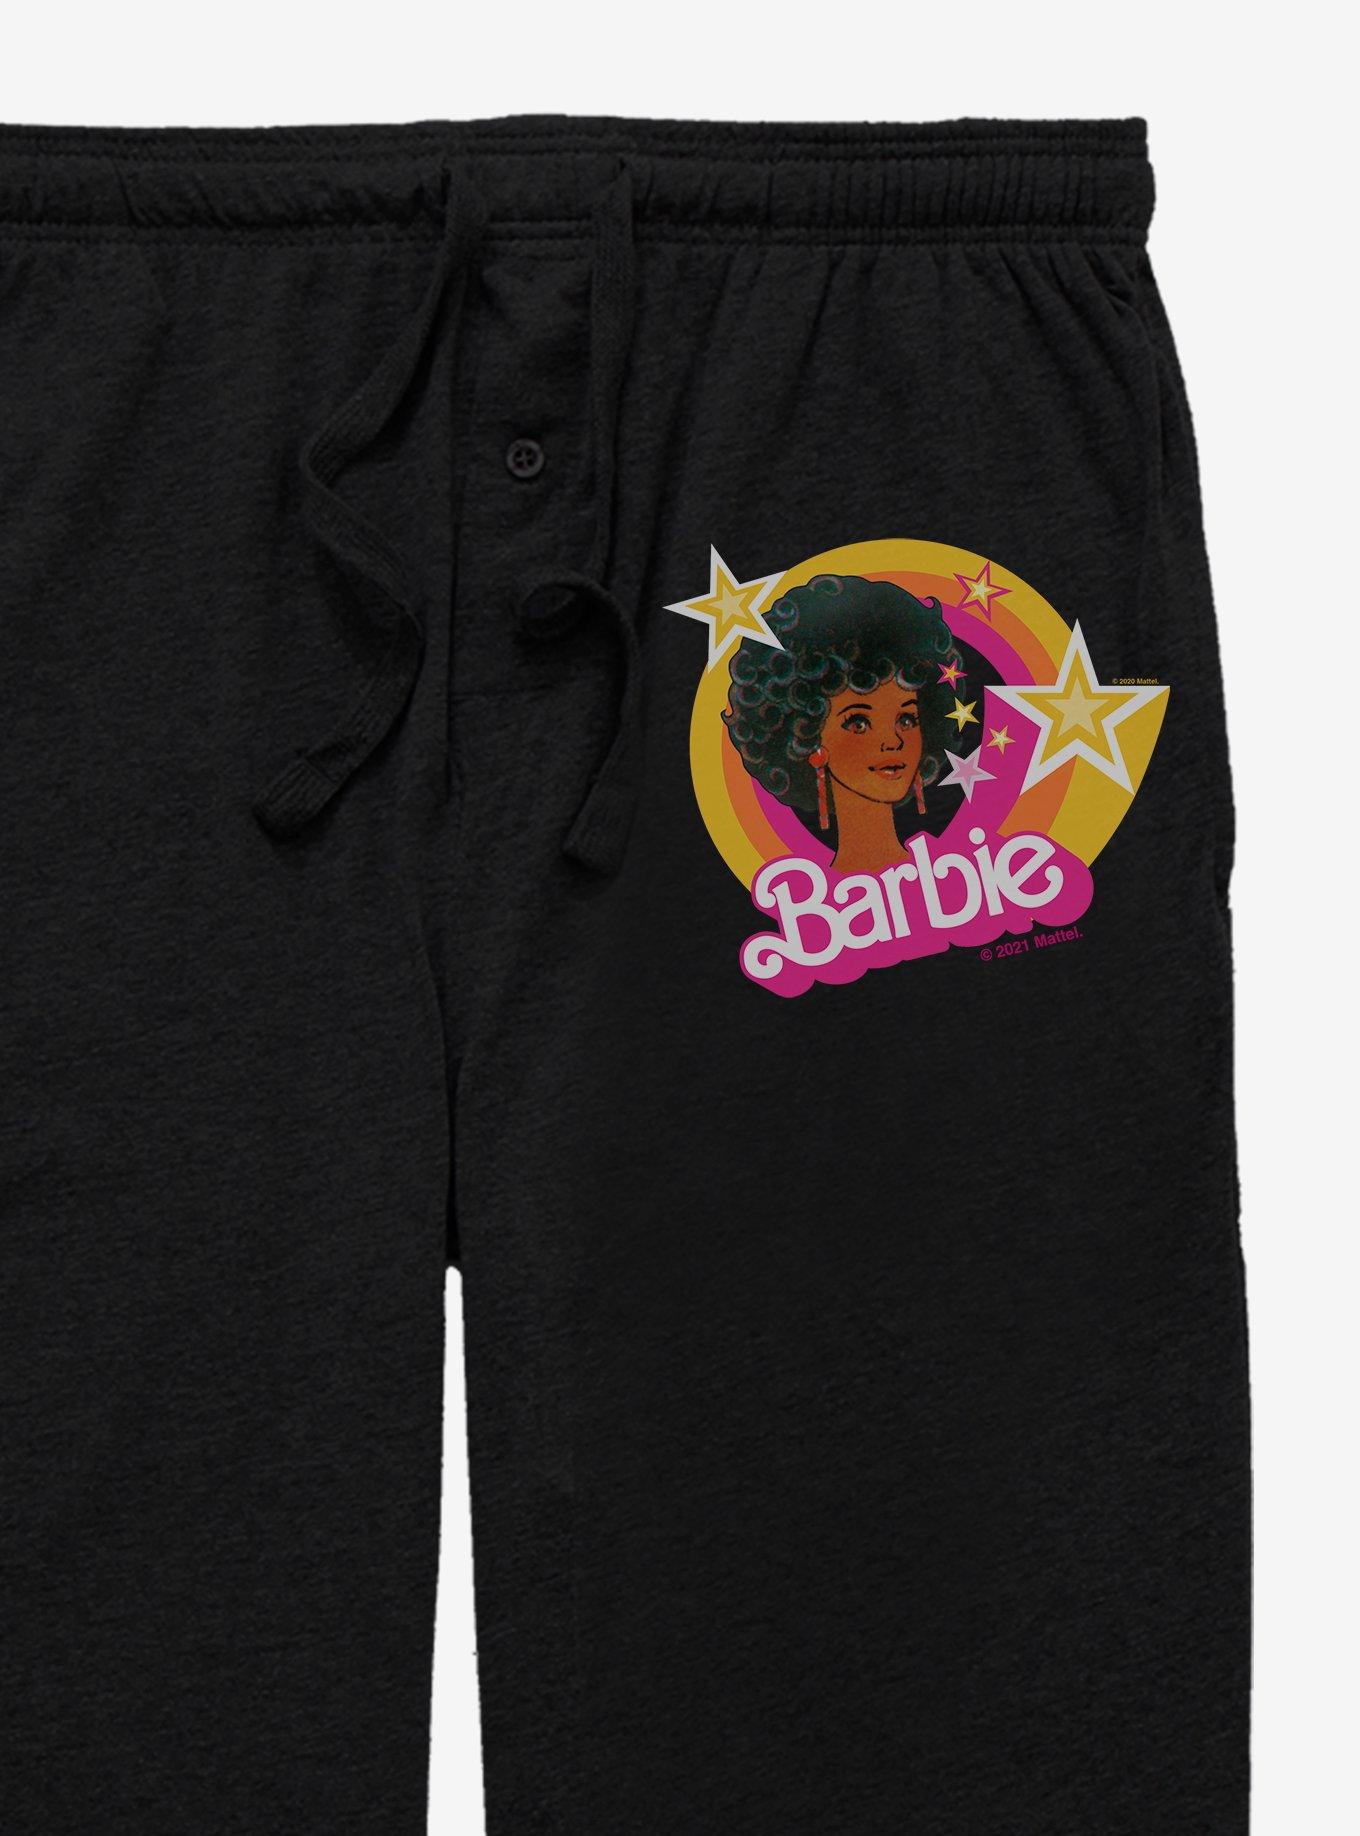 Barbie Retro Glam Pajama Pants